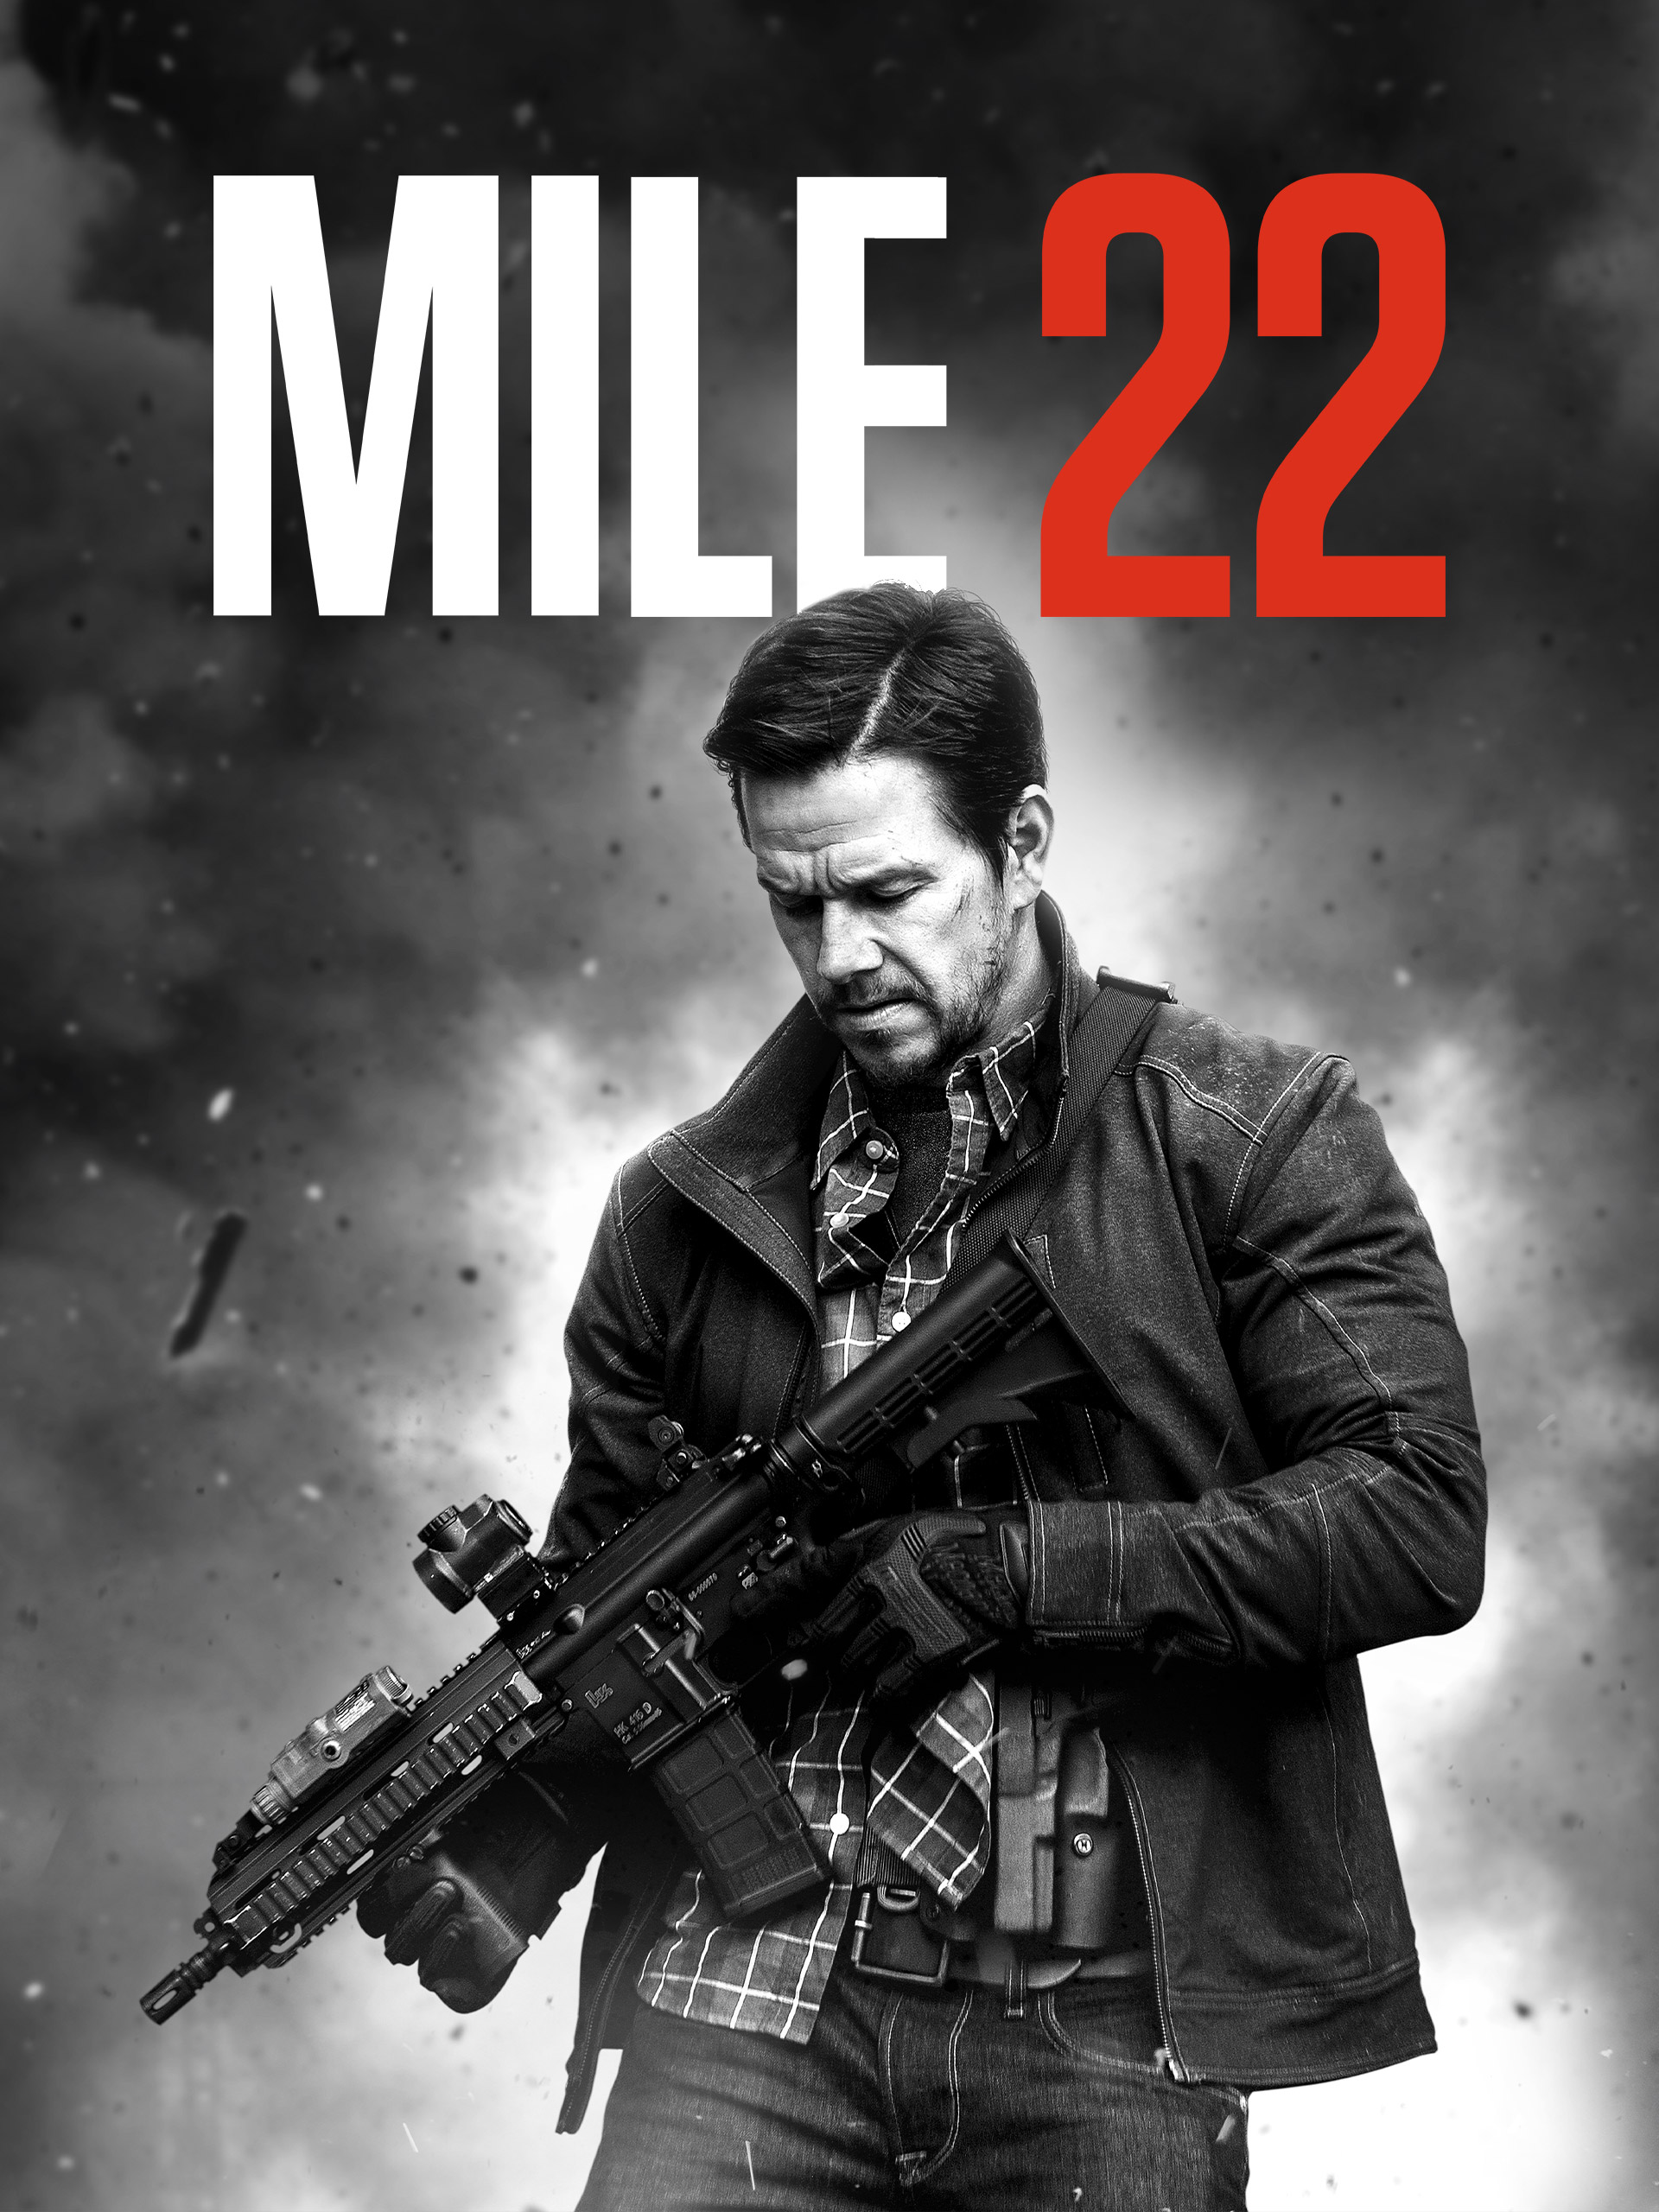 mile 22